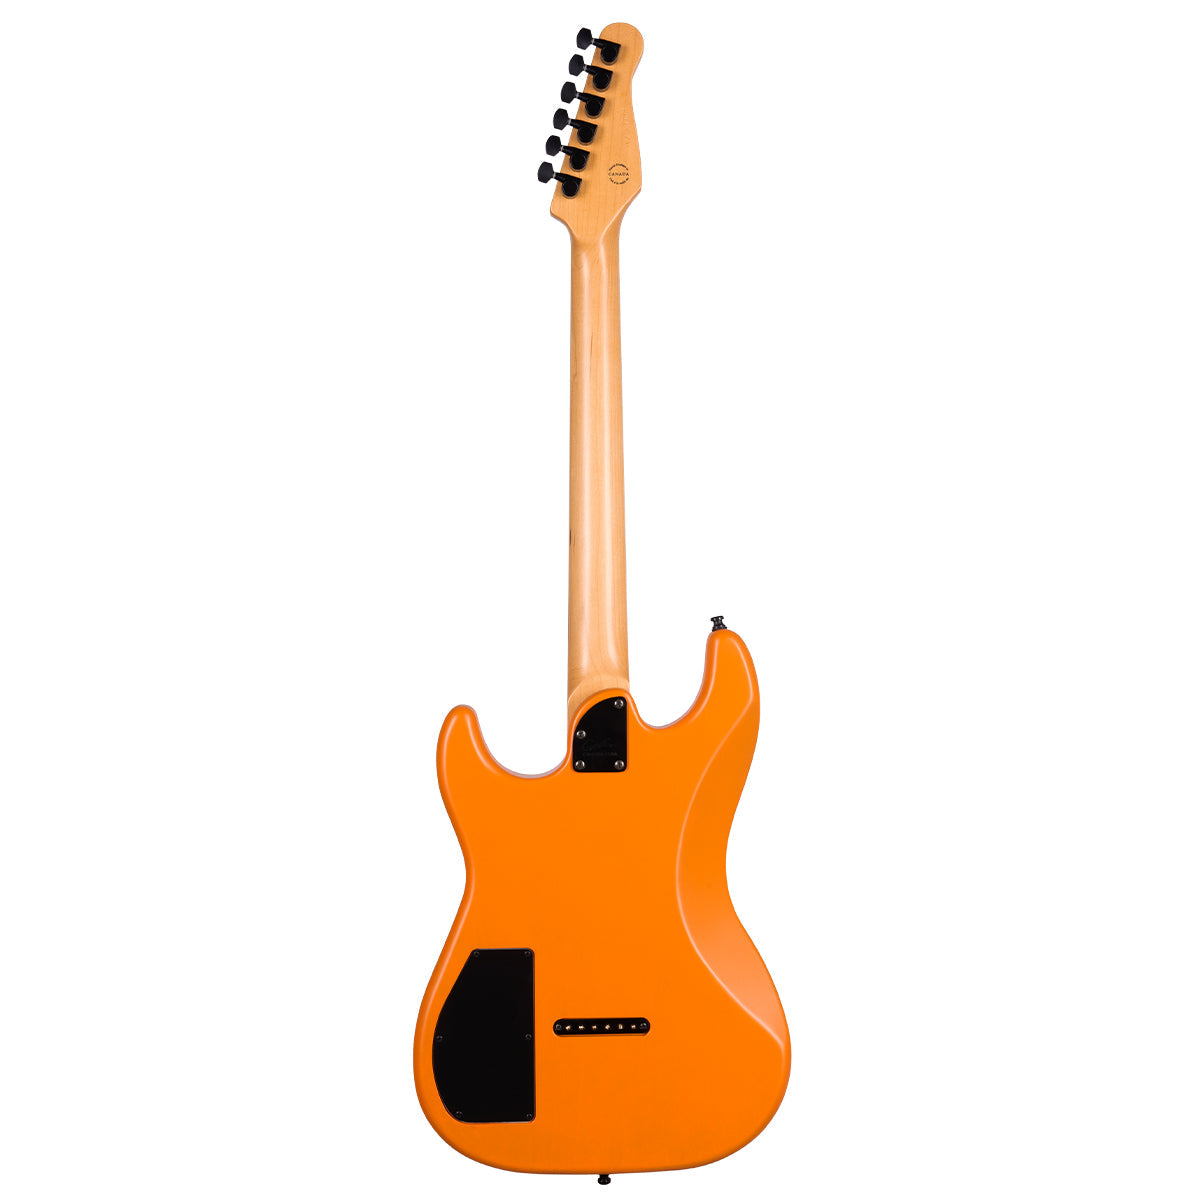 Godin Session RHT Pro Electric Guitar ~ Retro Orange, Electric Guitar for sale at Richards Guitars.